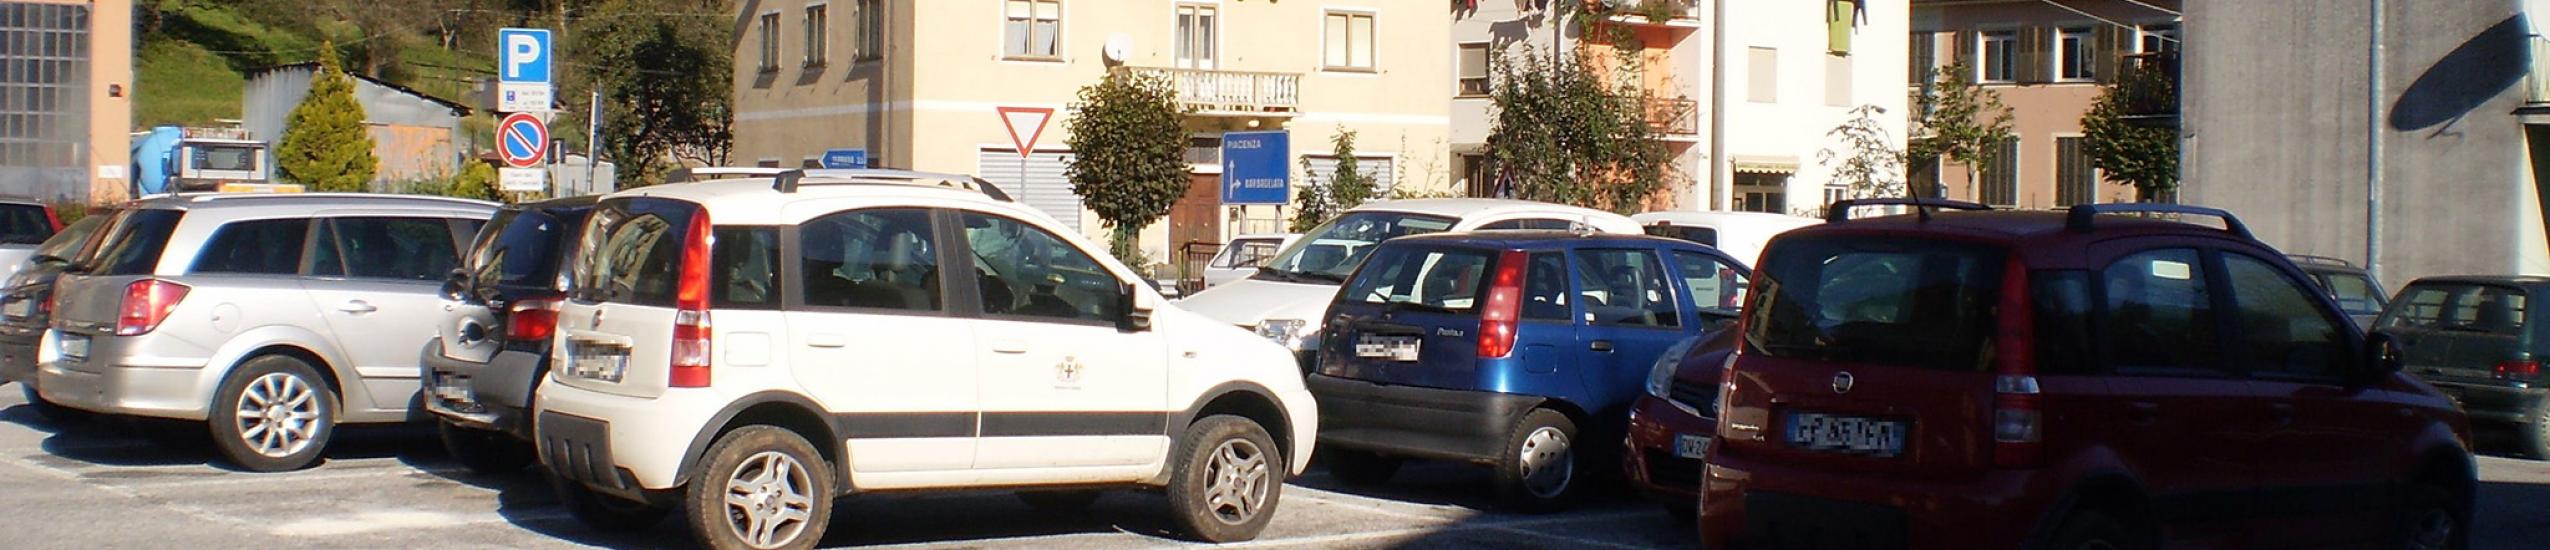 Parcheggio pubblico Montebruno